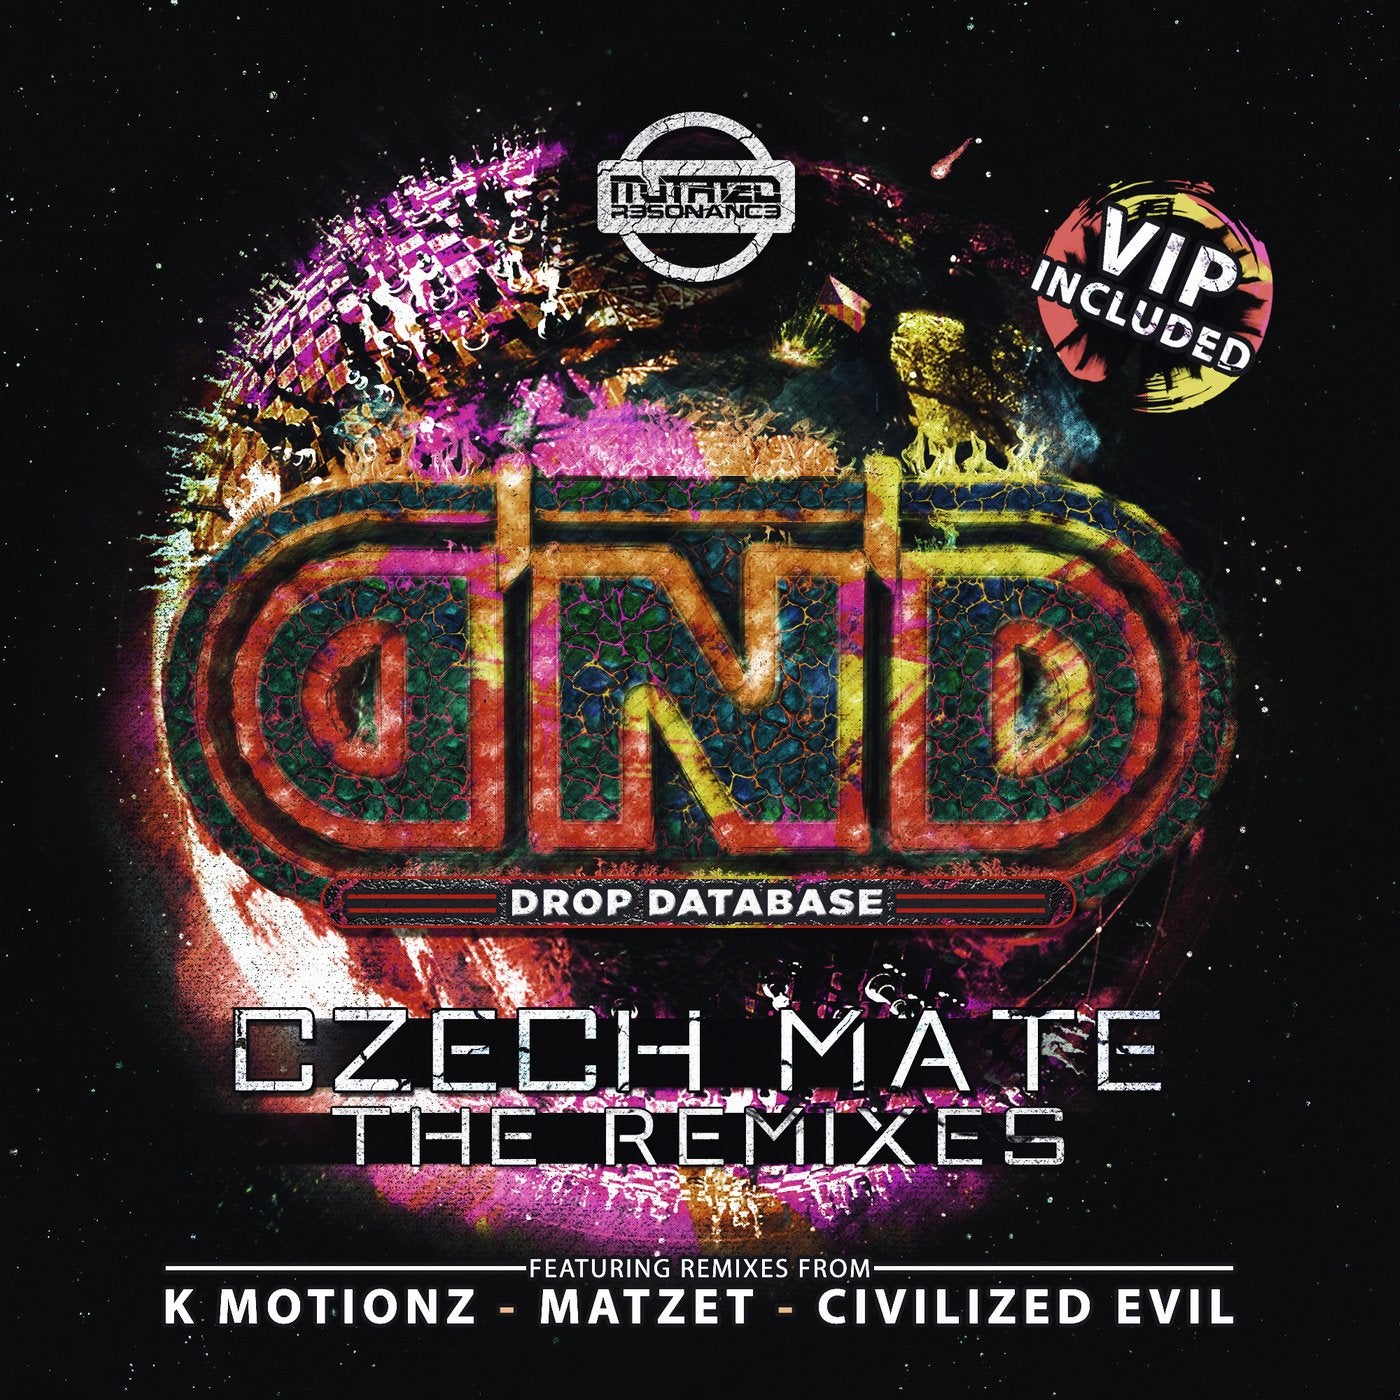 Czech Mate - The Remixes